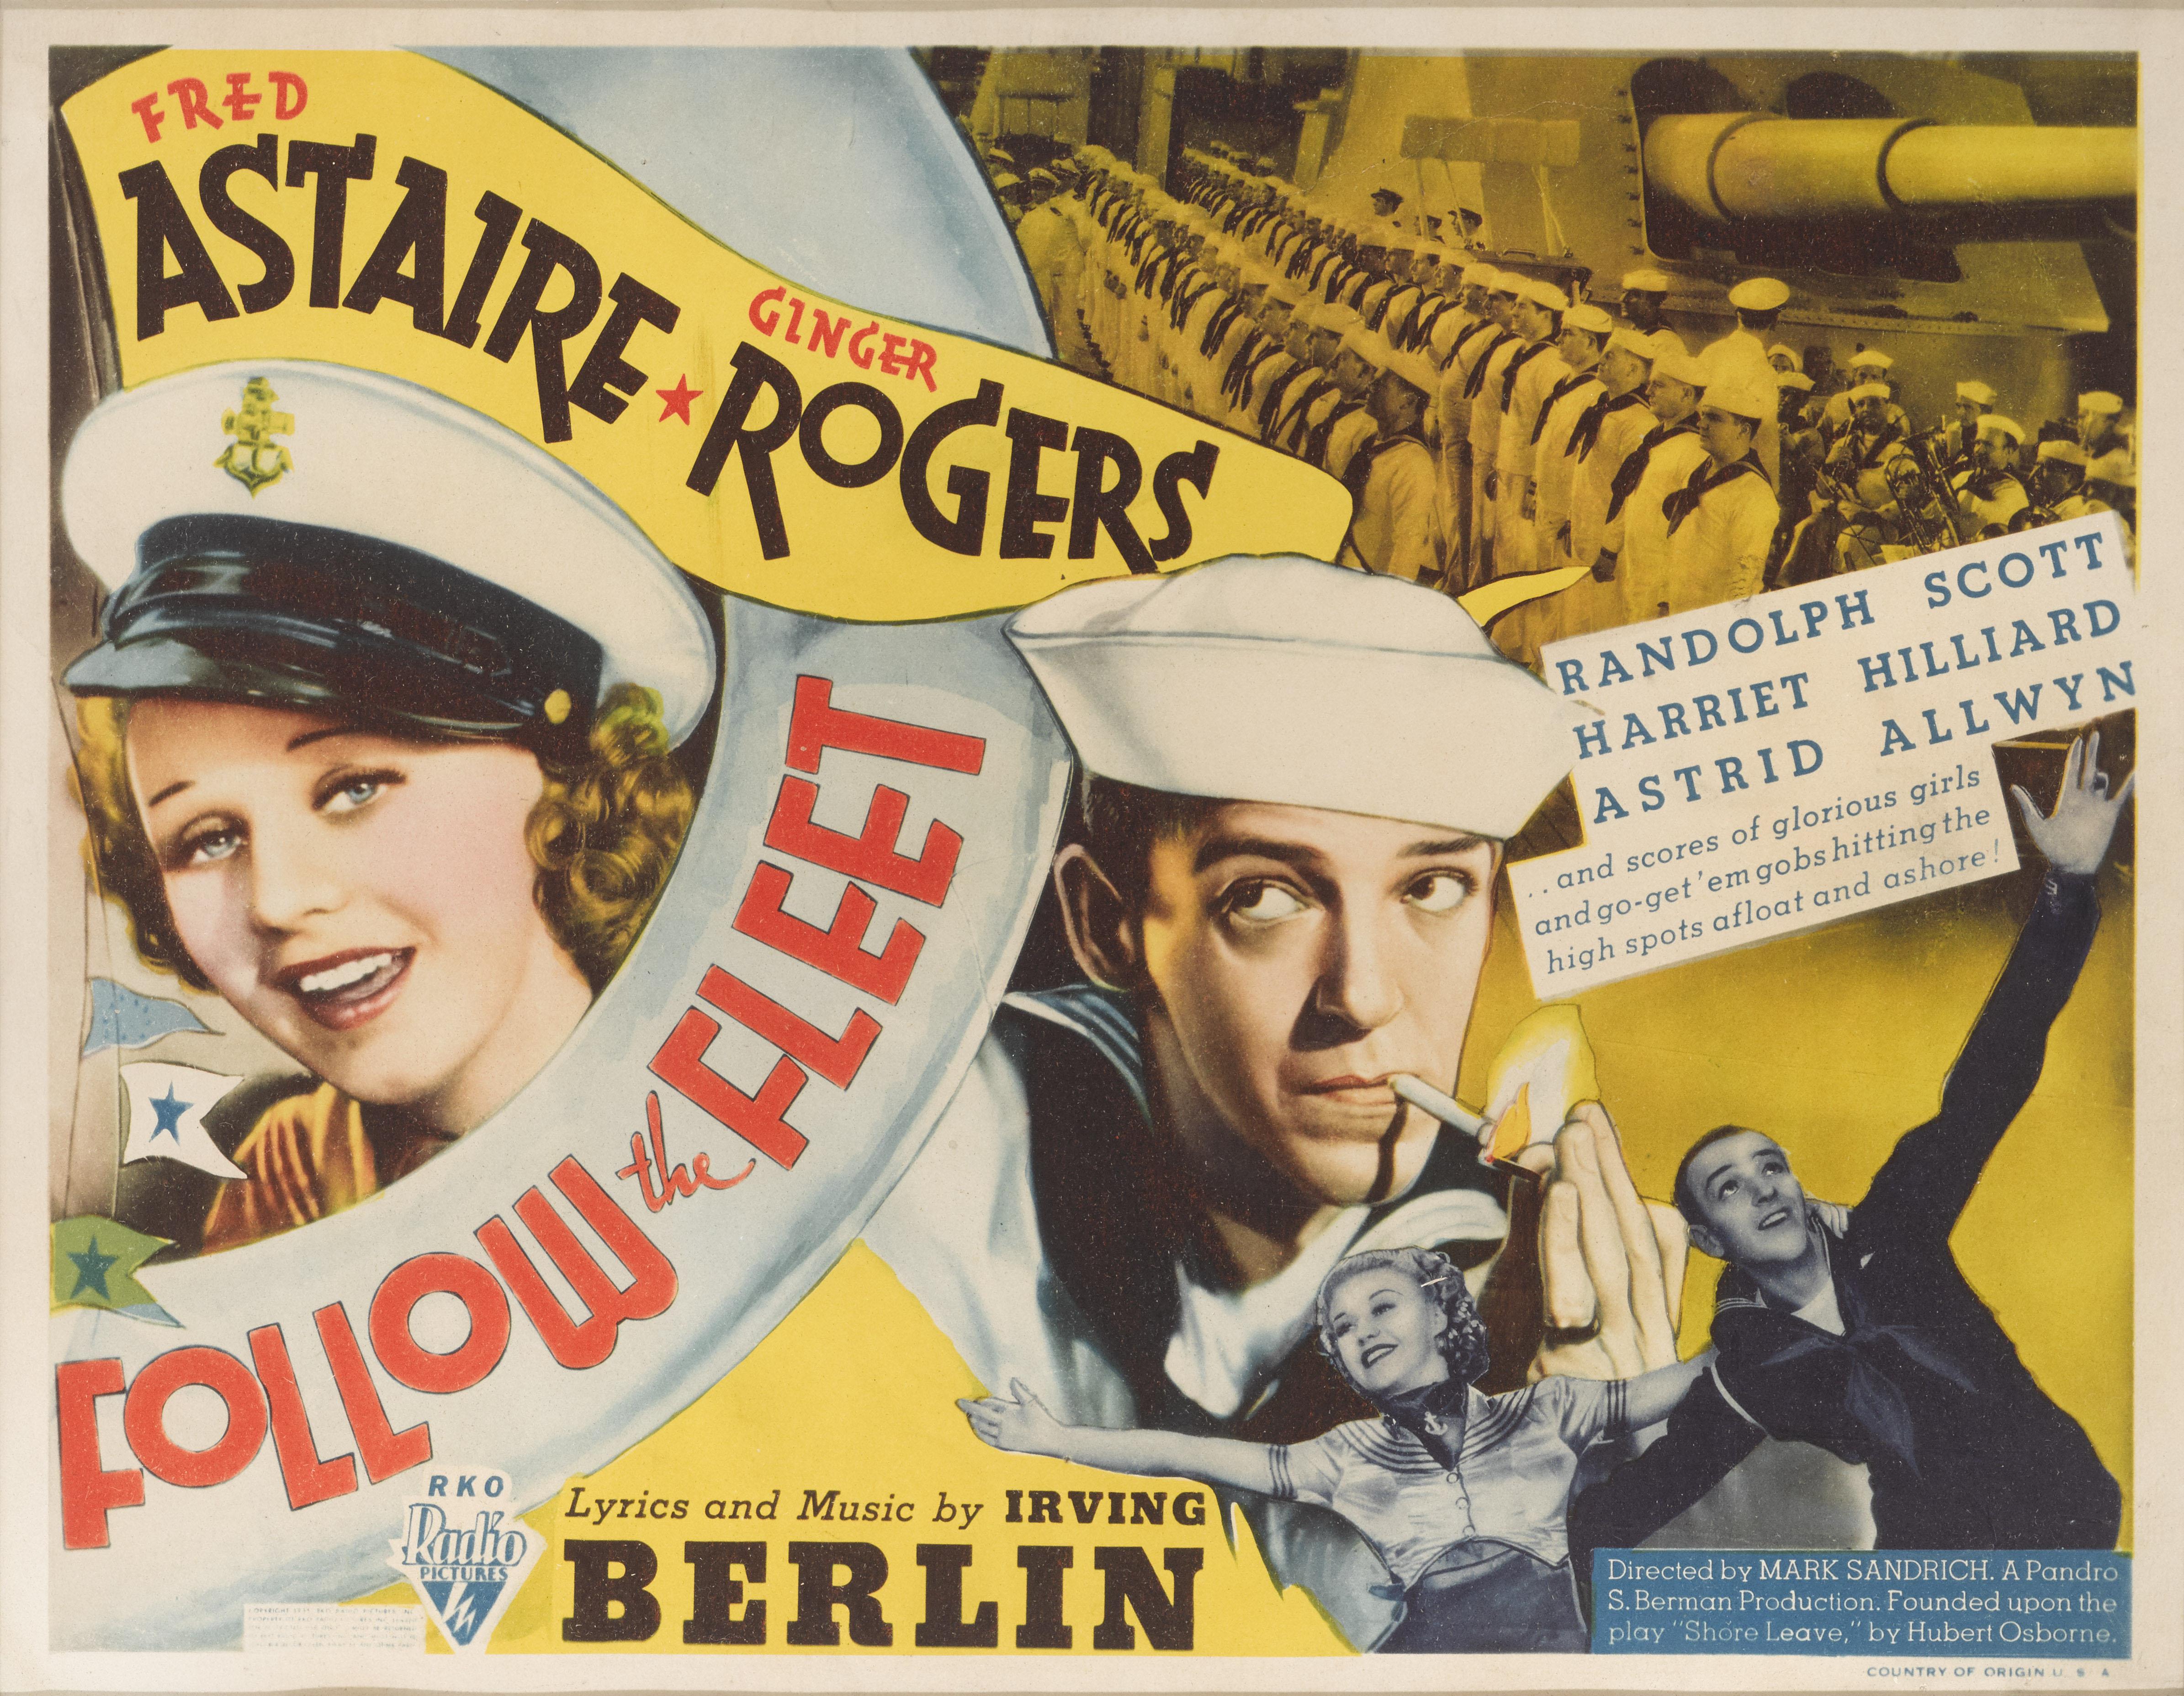 Original USTitle Lobby-Karte für die 1936 Musical-Komödie Follow the Fleet.
Dieser Film mit Fred Astaire und Ginger Rogers in den Hauptrollen wurde unter der Regie von Mark Sandrich gedreht.
Diese Titelkarte ist konservatorisch gerahmt mit